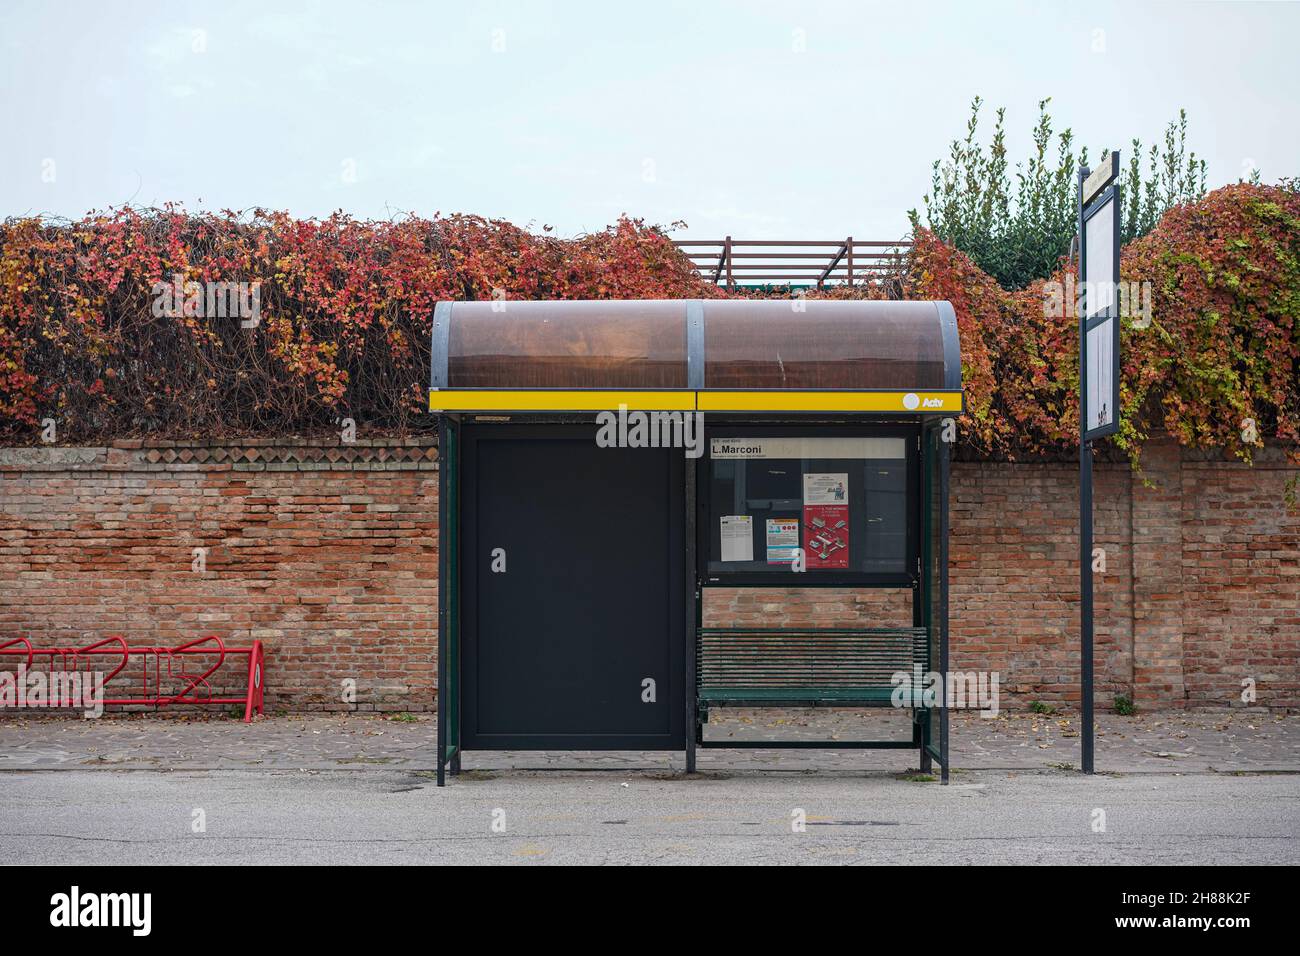 Arrêt de bus devant un mur et des buissons.À gauche, un stand de vélo rouge. Banque D'Images